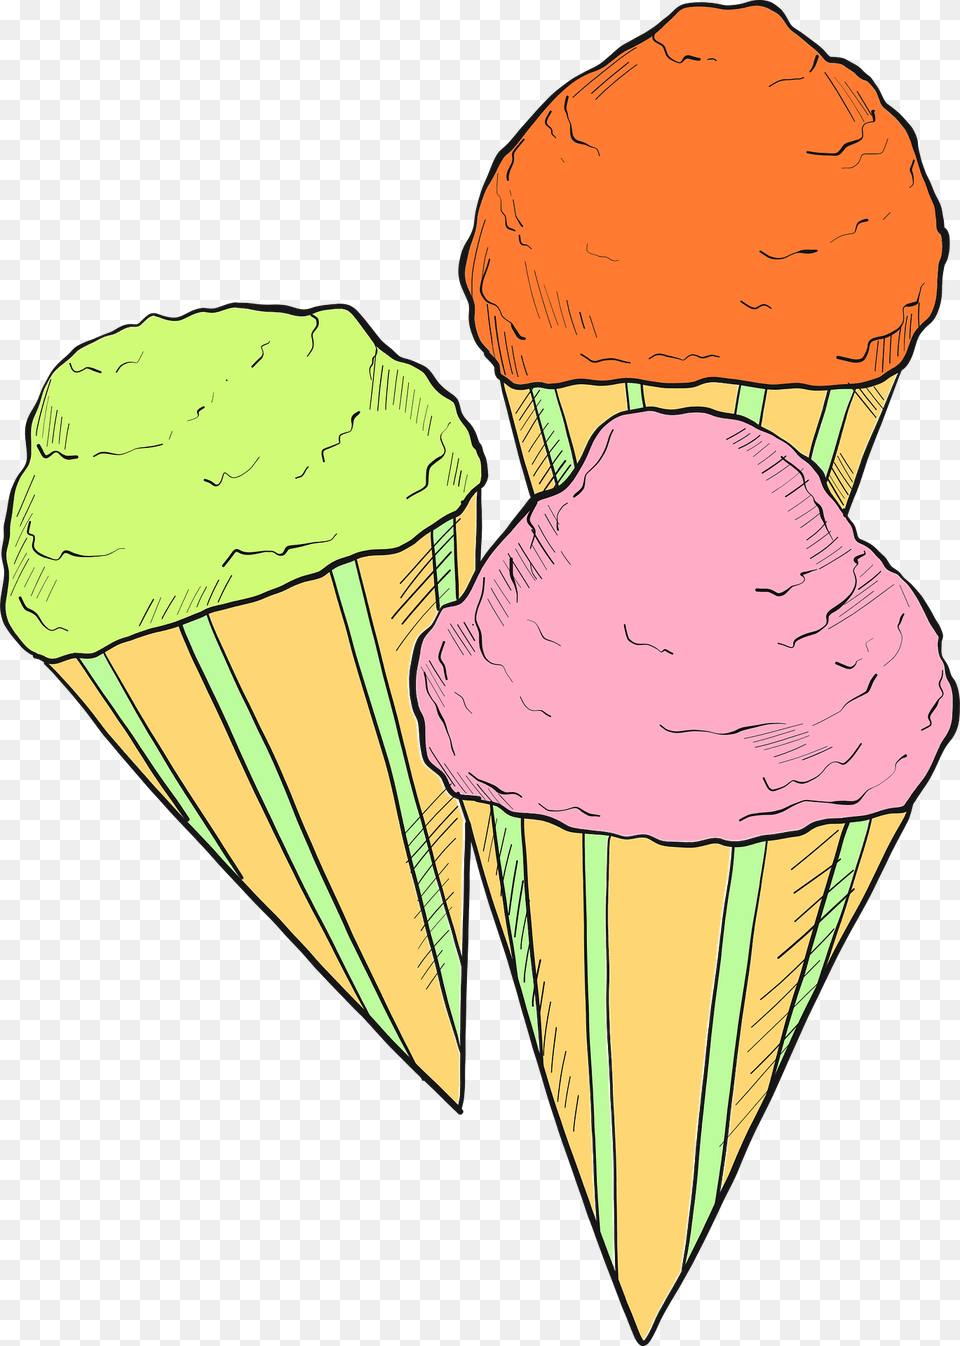 Snow Cones Clipart, Cream, Dessert, Food, Ice Cream Png